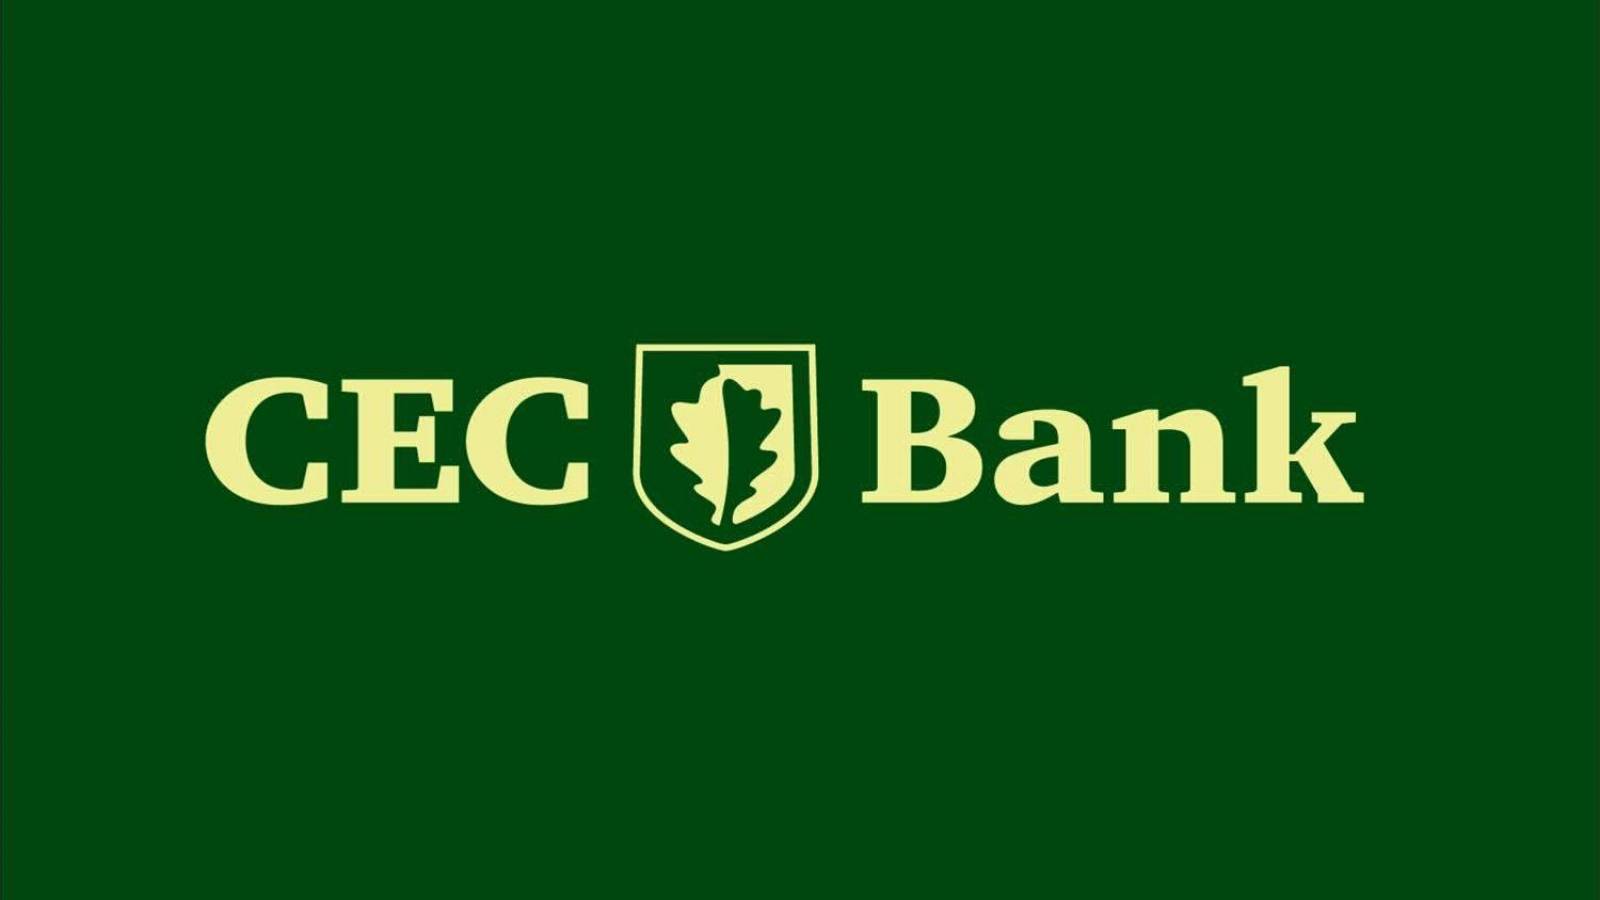 Identité de la banque CEC